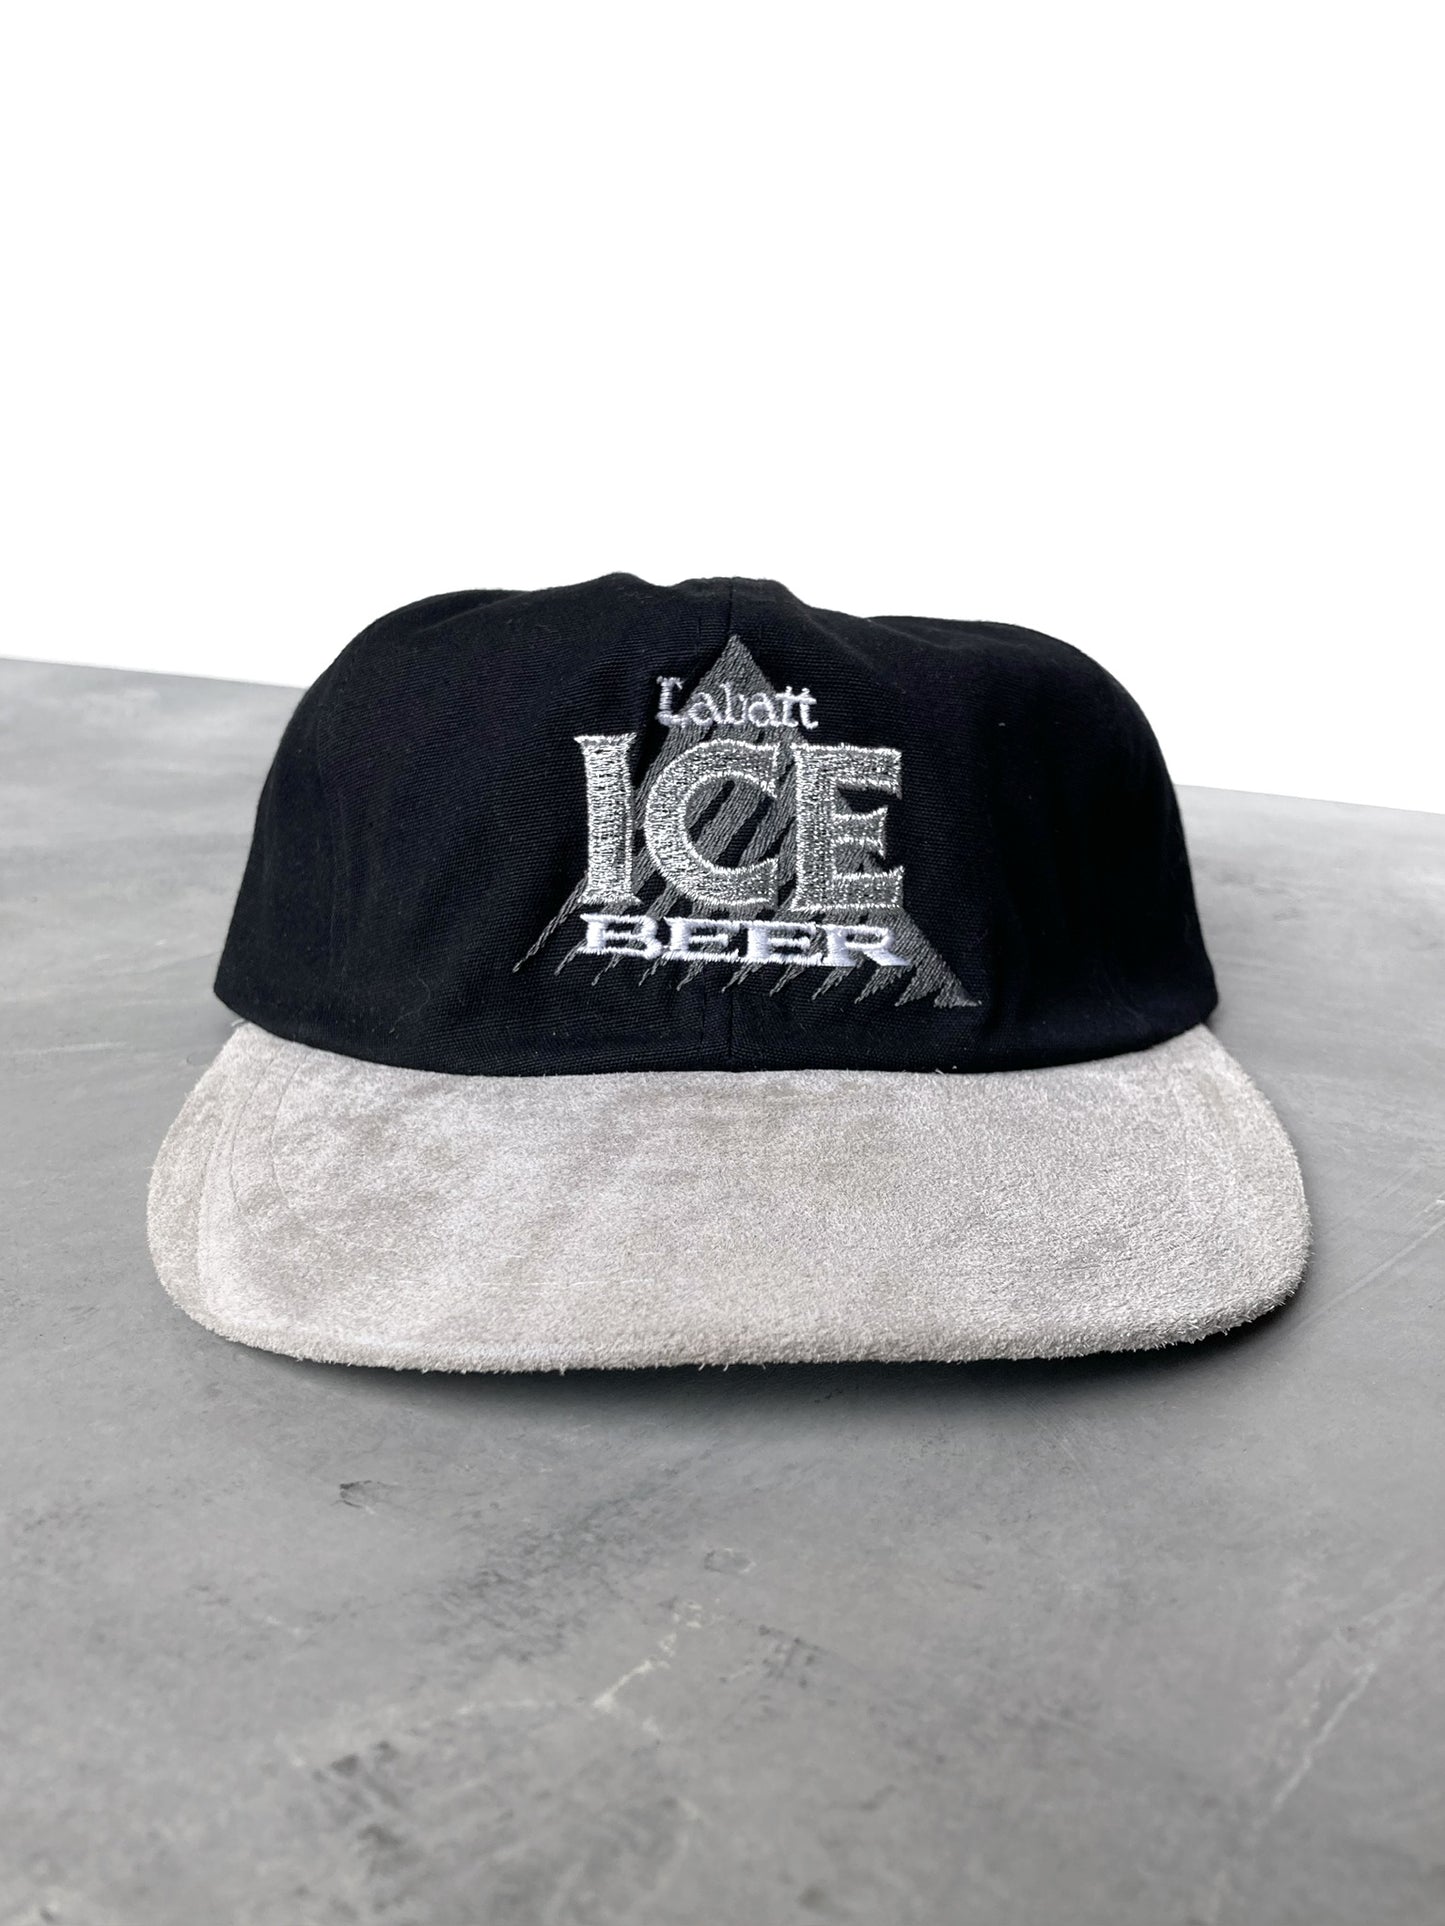 Labatt Ice Beer Hat 90's